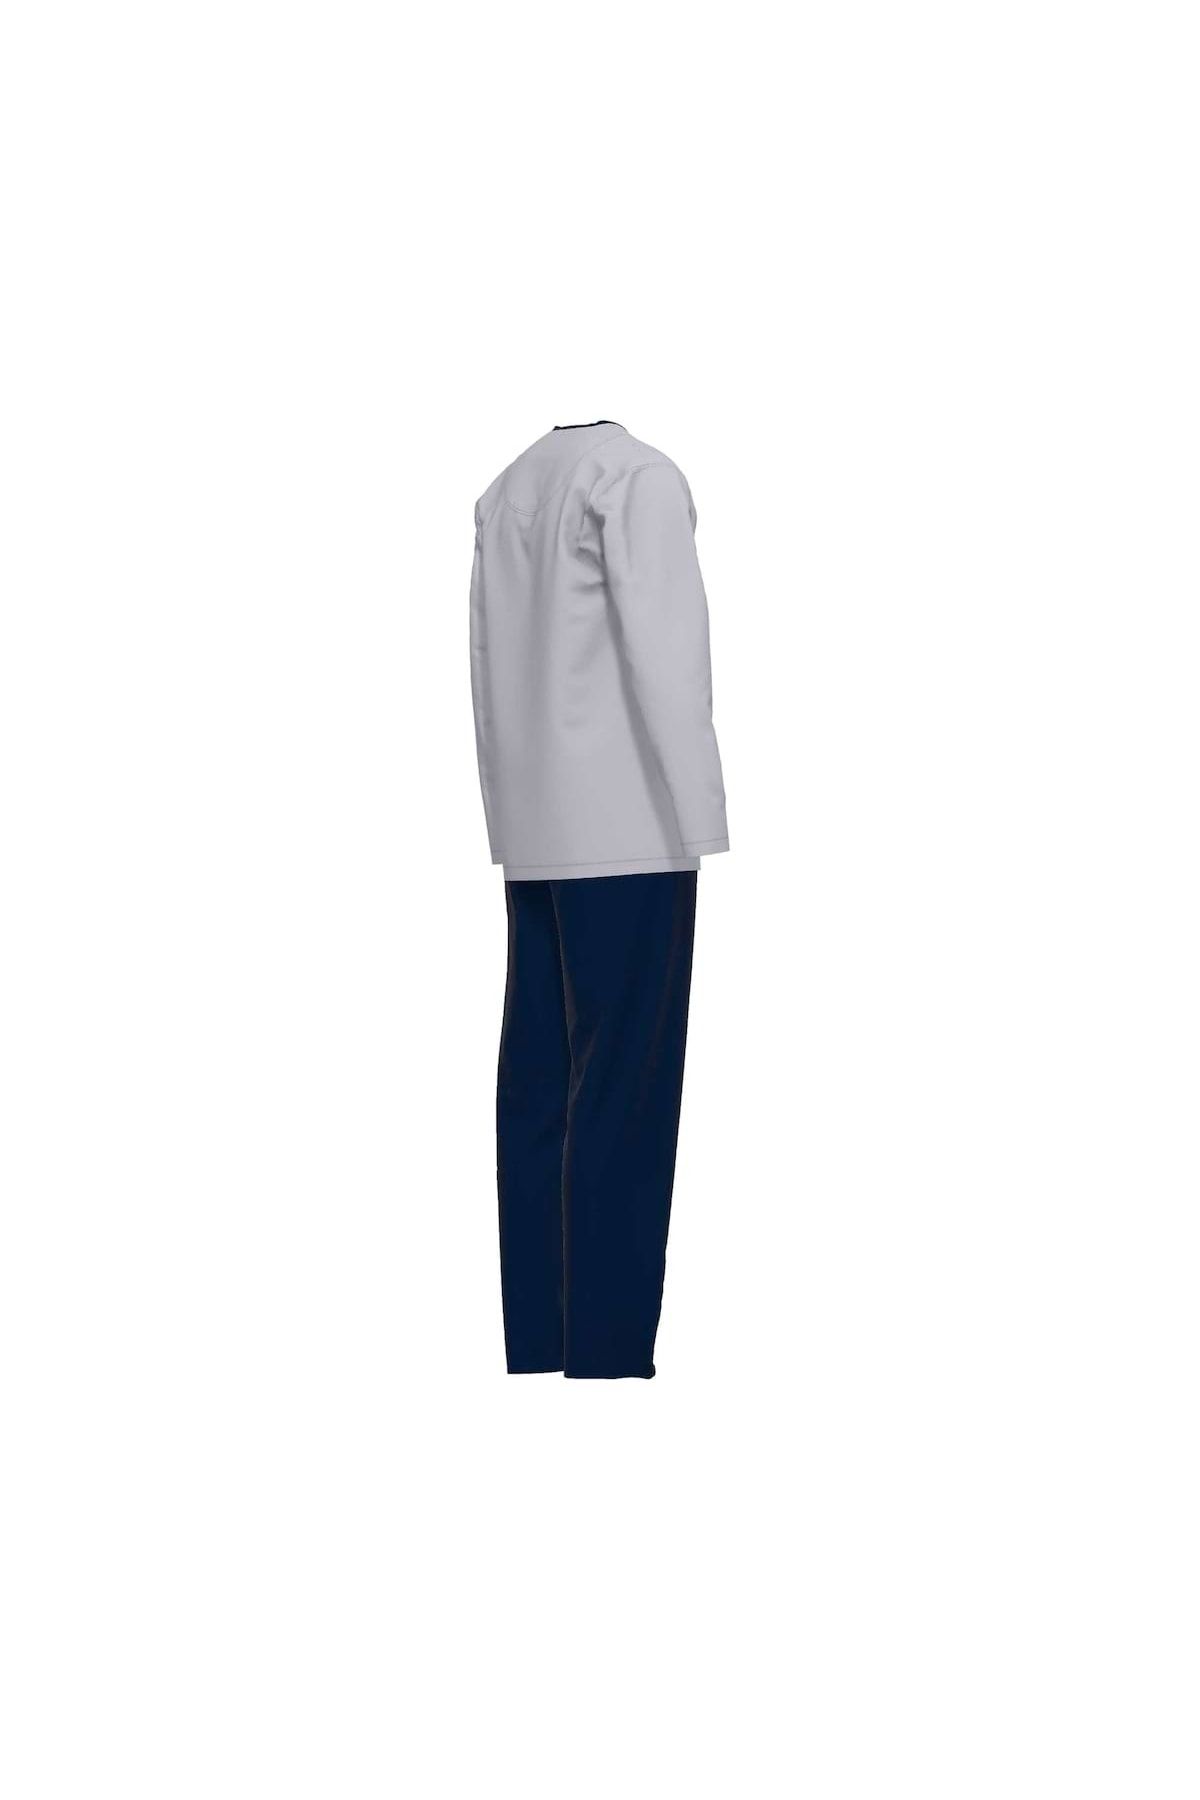 Tom Tailor Herren Schlafanzug - Pyjama, Logo, lang - einfarbig, Trendyol V-Ausschnitt, Baumwolle